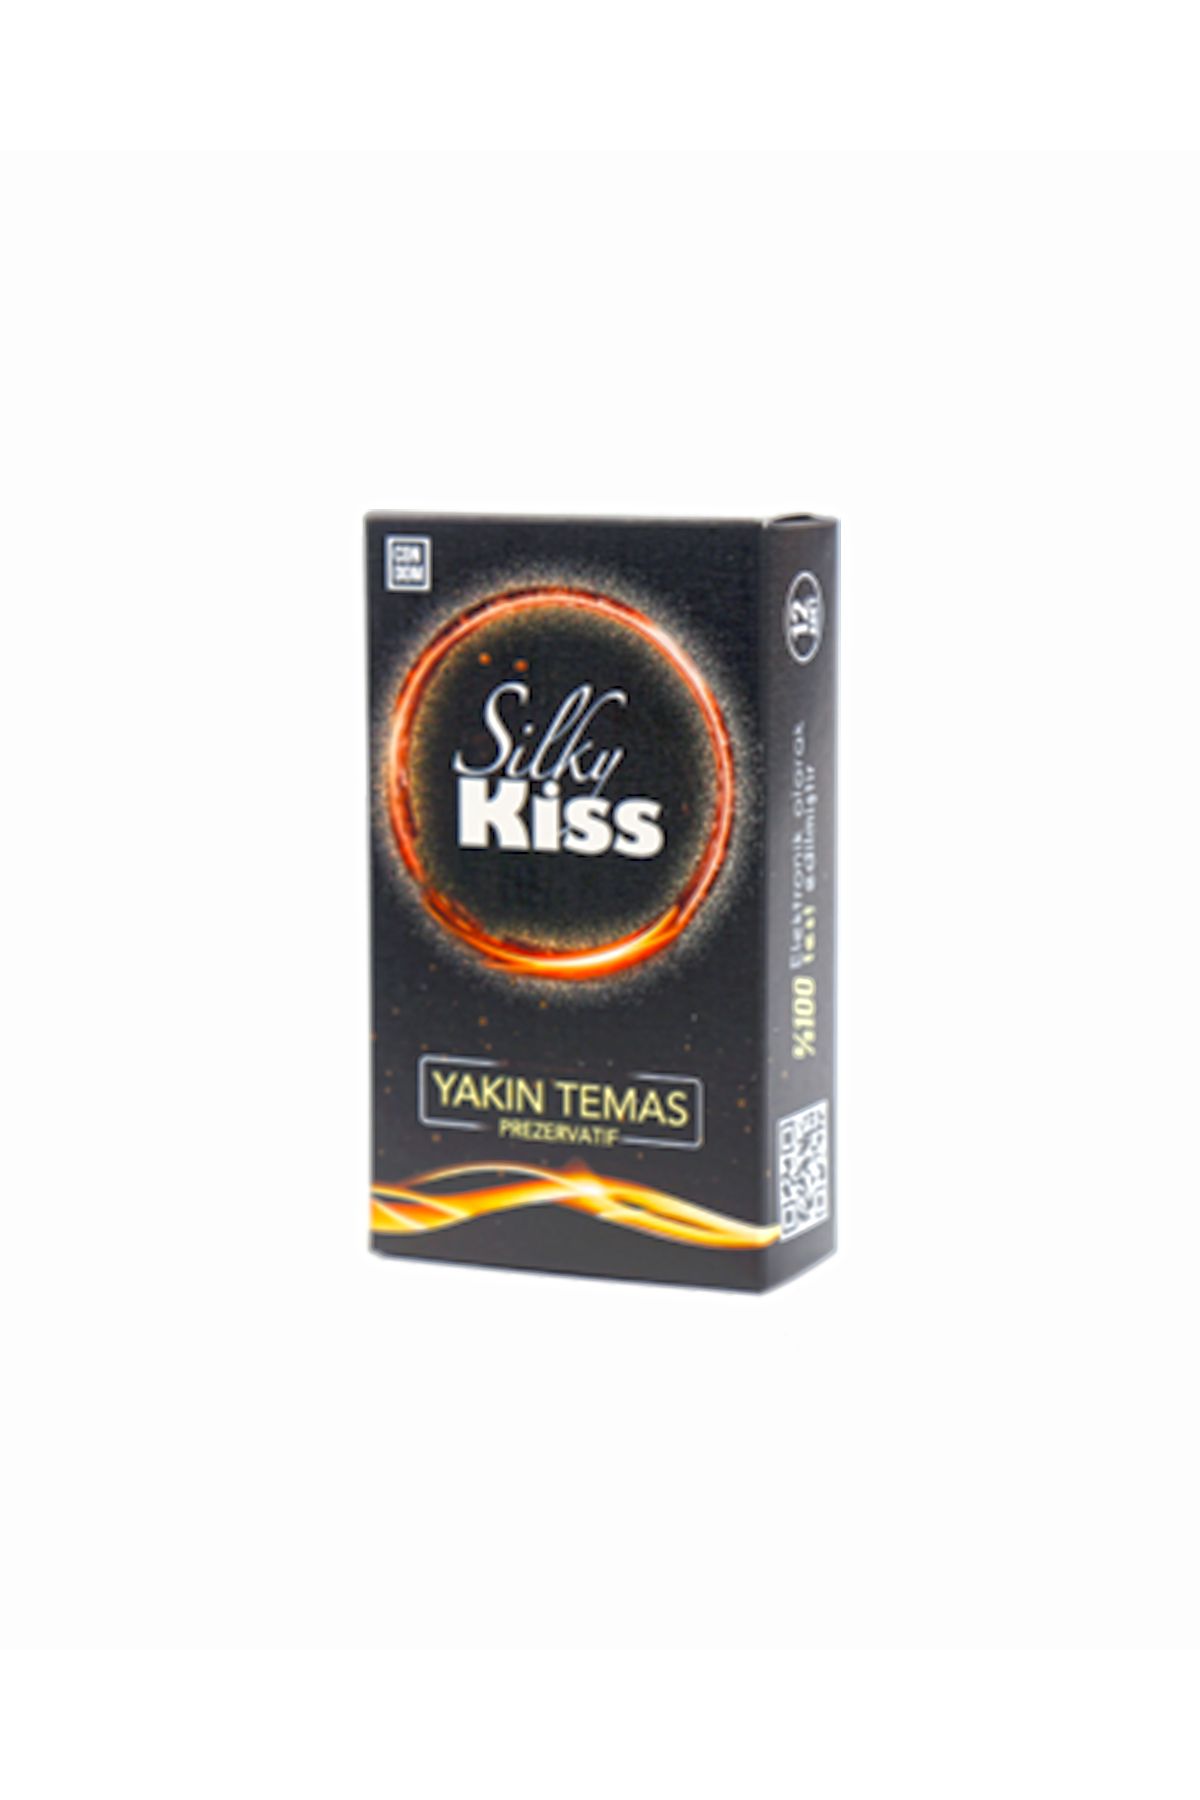 Fiesta Silky Kiss Yakın Temas Prezervatif 12 Adet